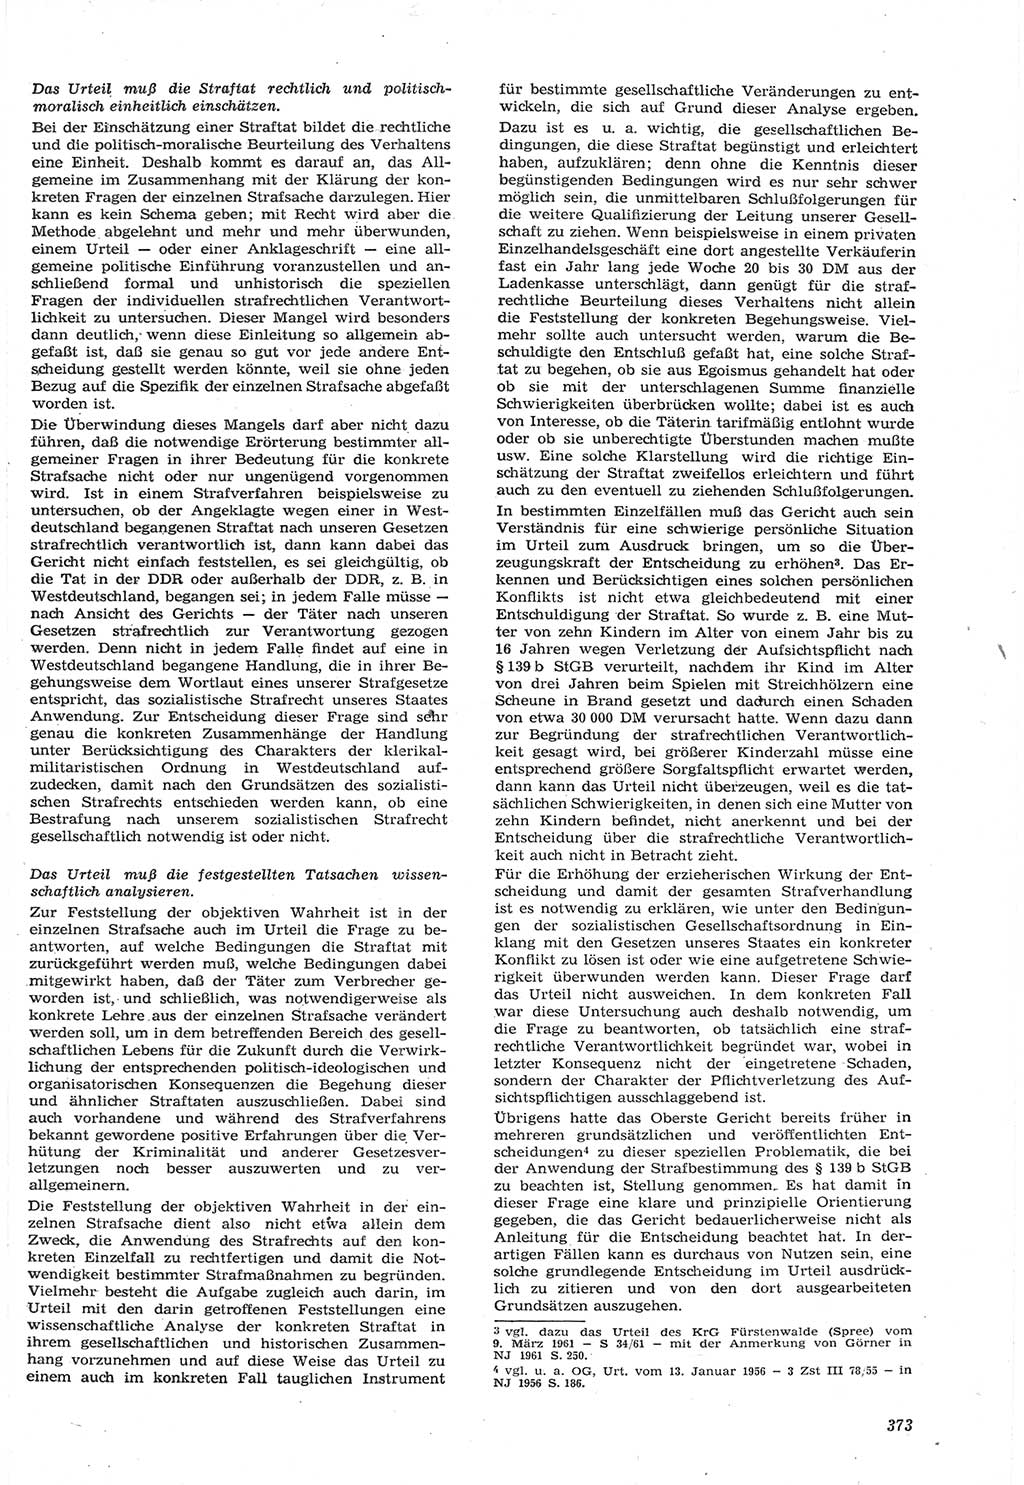 Neue Justiz (NJ), Zeitschrift für Recht und Rechtswissenschaft [Deutsche Demokratische Republik (DDR)], 15. Jahrgang 1961, Seite 373 (NJ DDR 1961, S. 373)